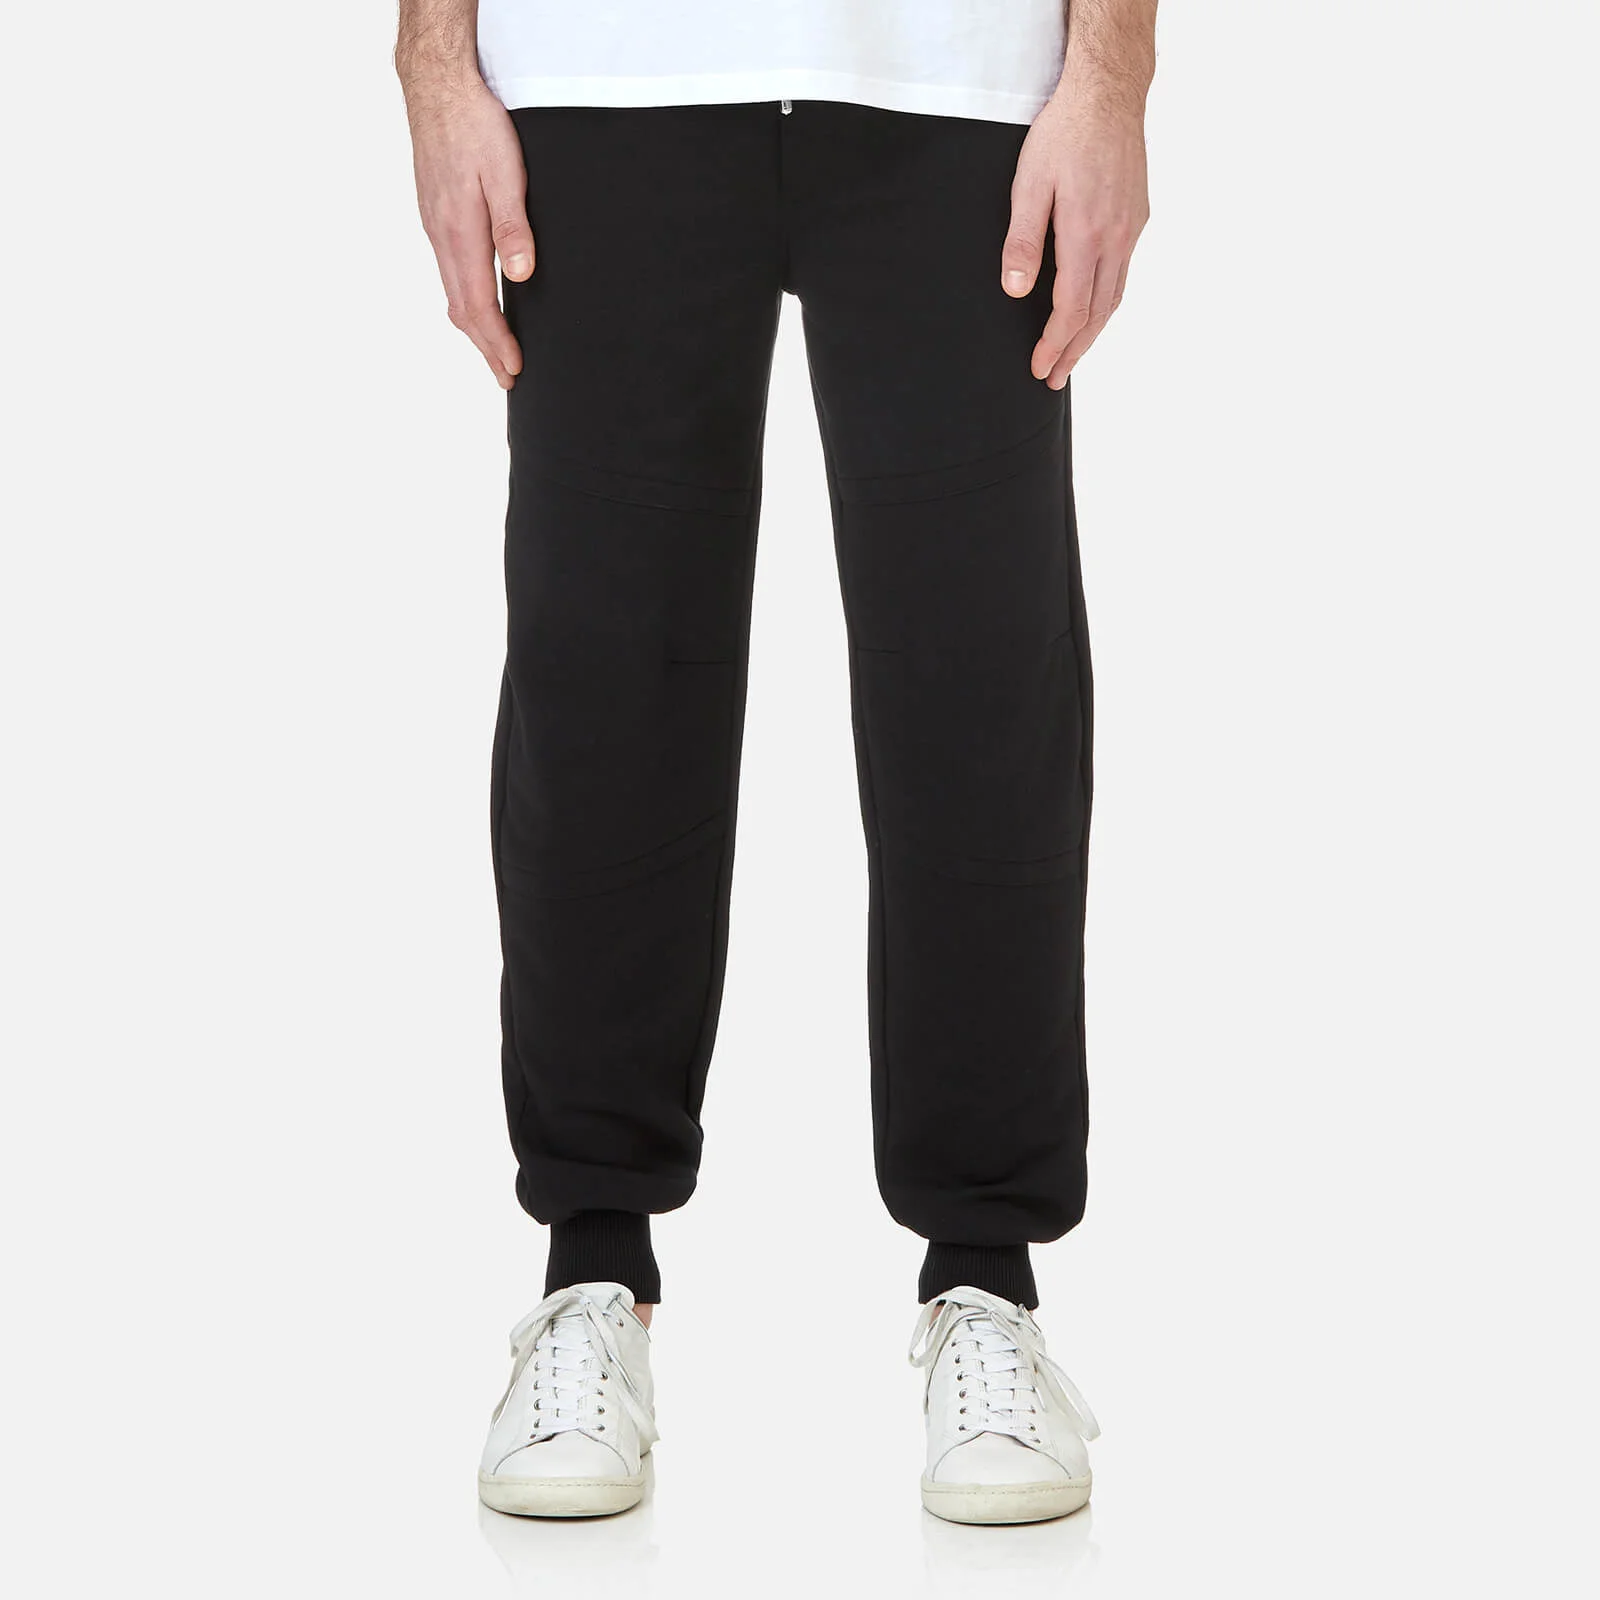 Versus Versace Men's Pocket Logo Sweat Pants - Black/Grey Image 1